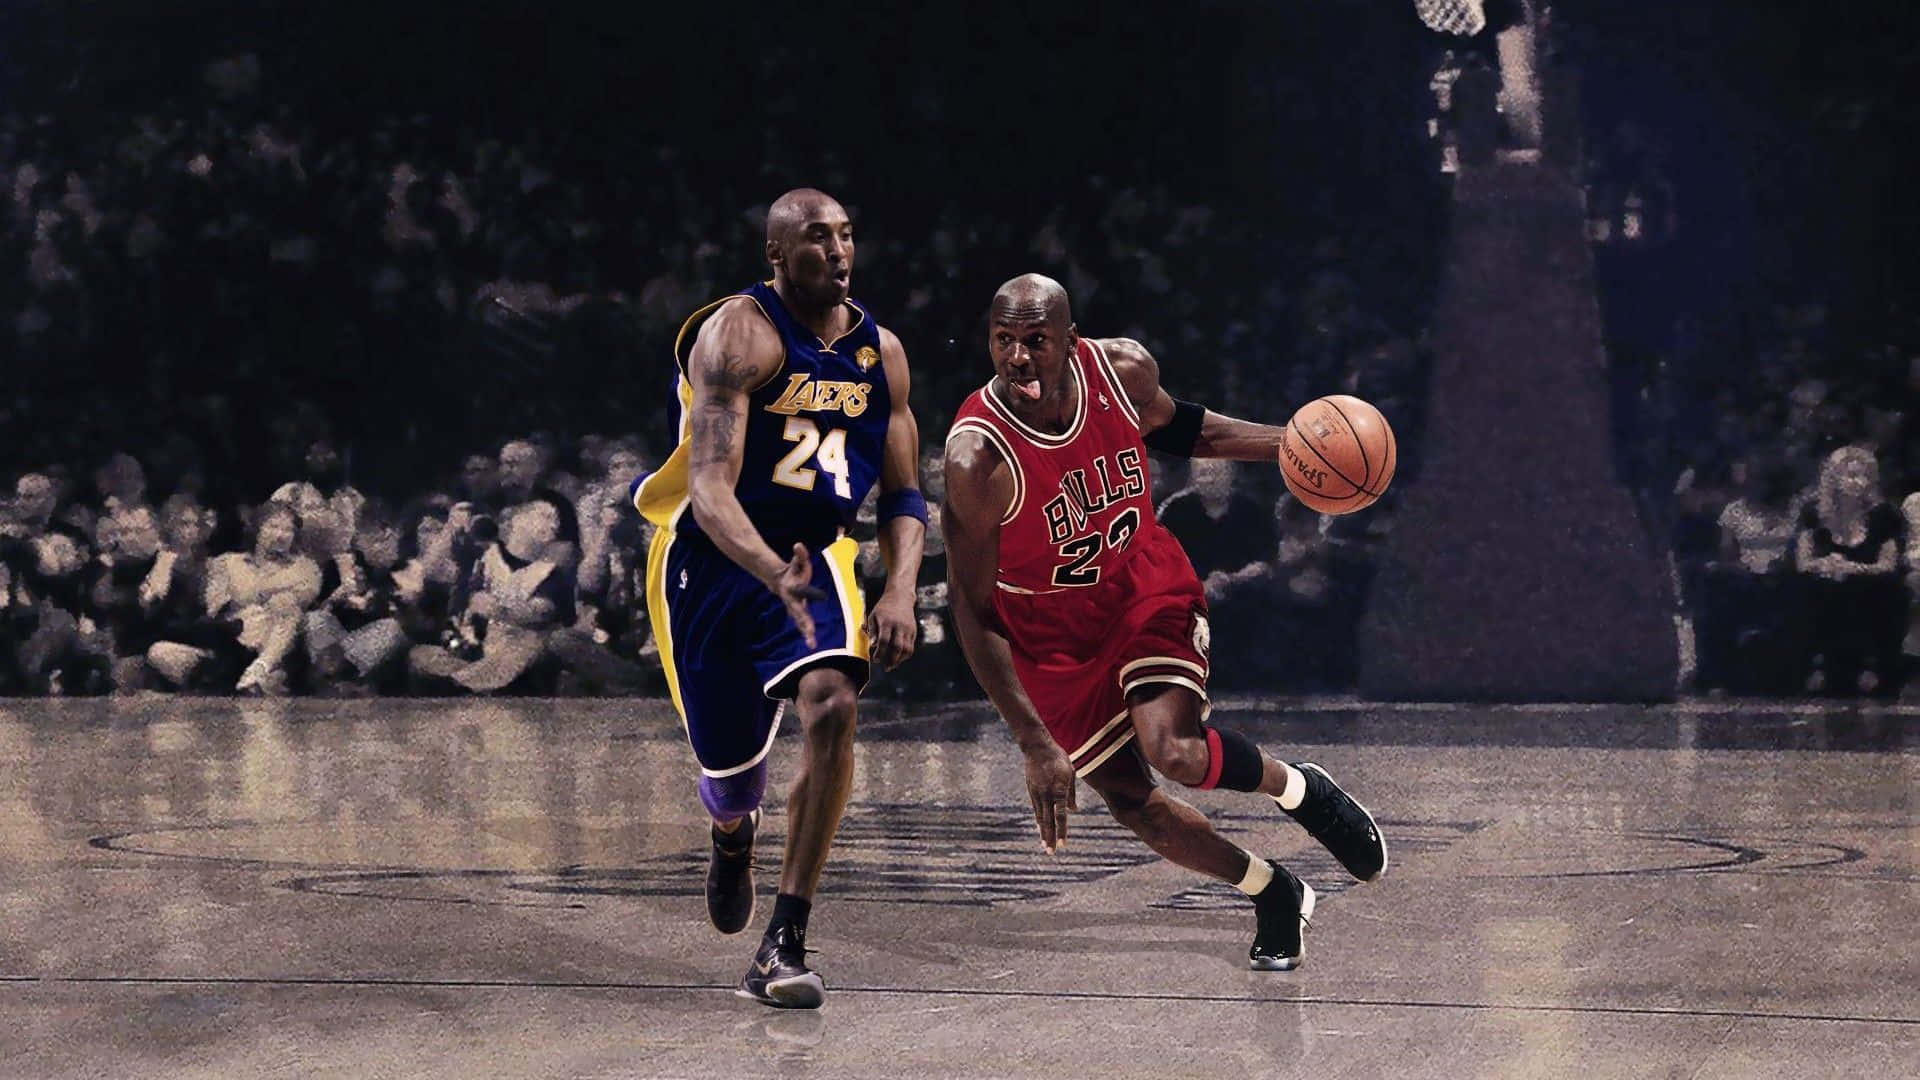 Sfondobasket Con Kobe Bryant E Michael Jordan.